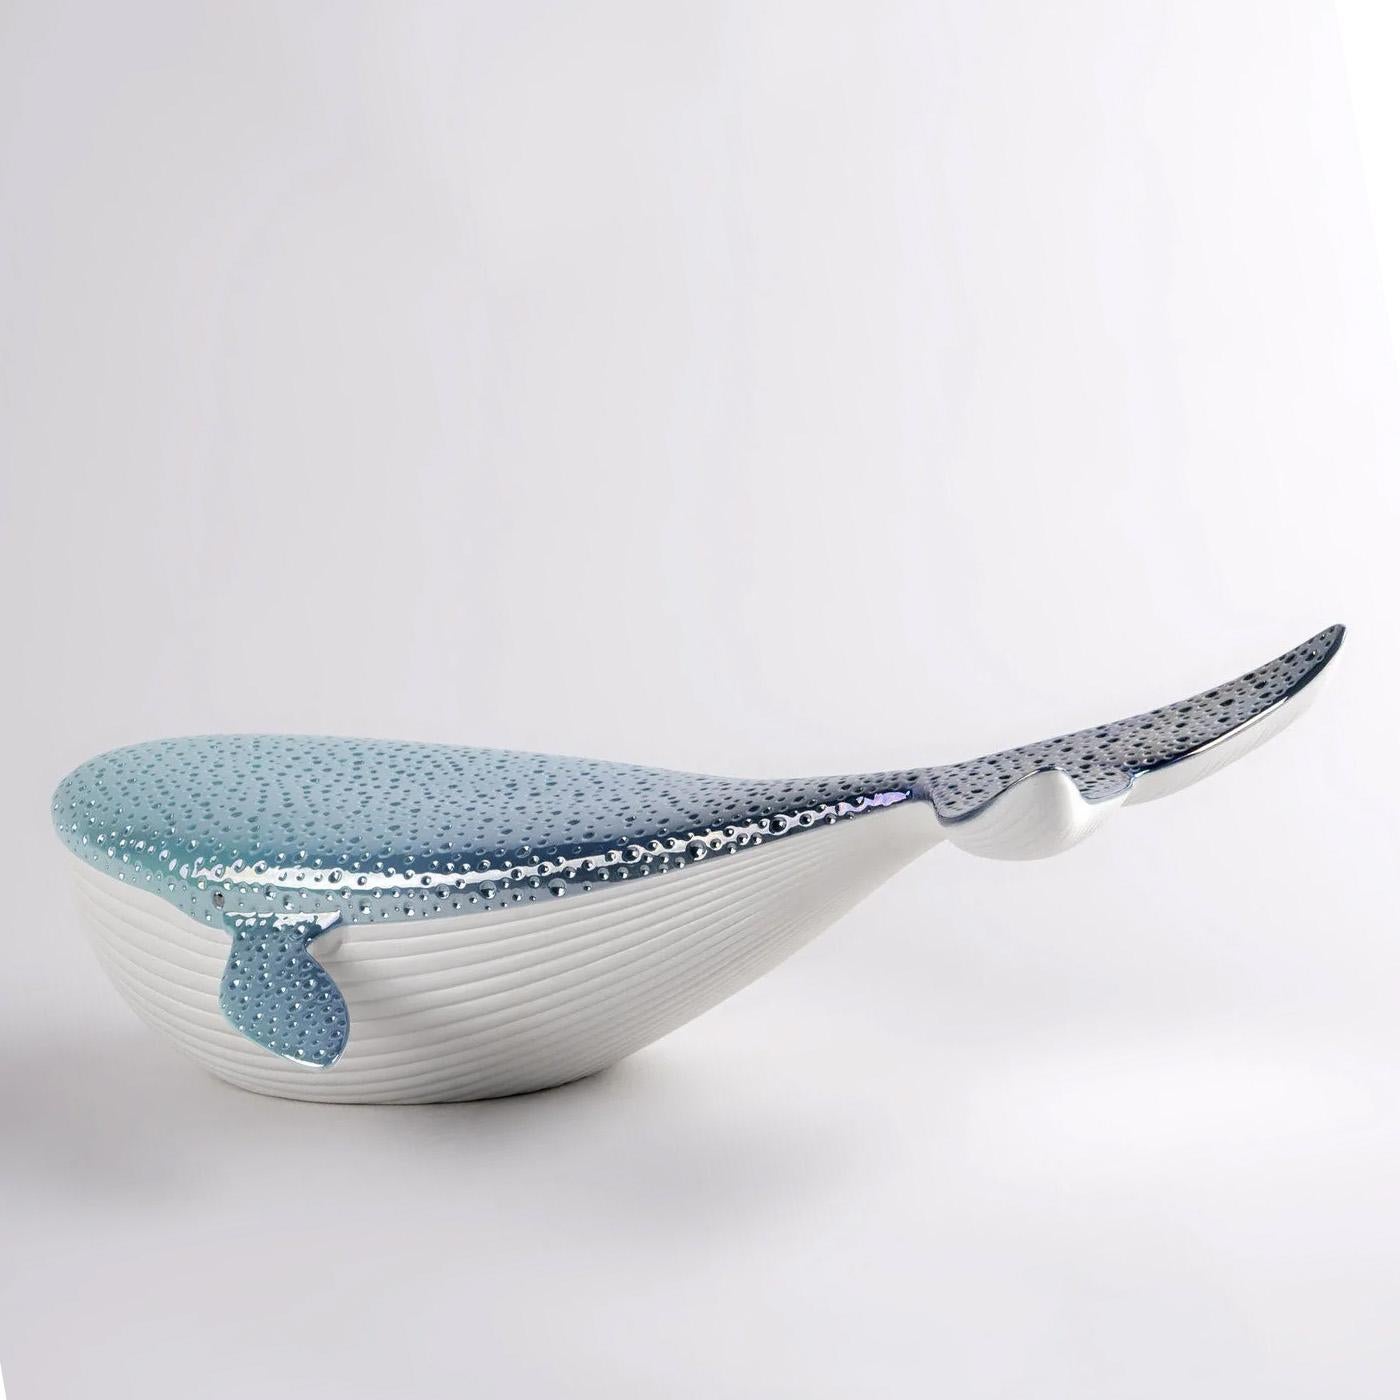 Portuguese Blue Whale Sculpture For Sale